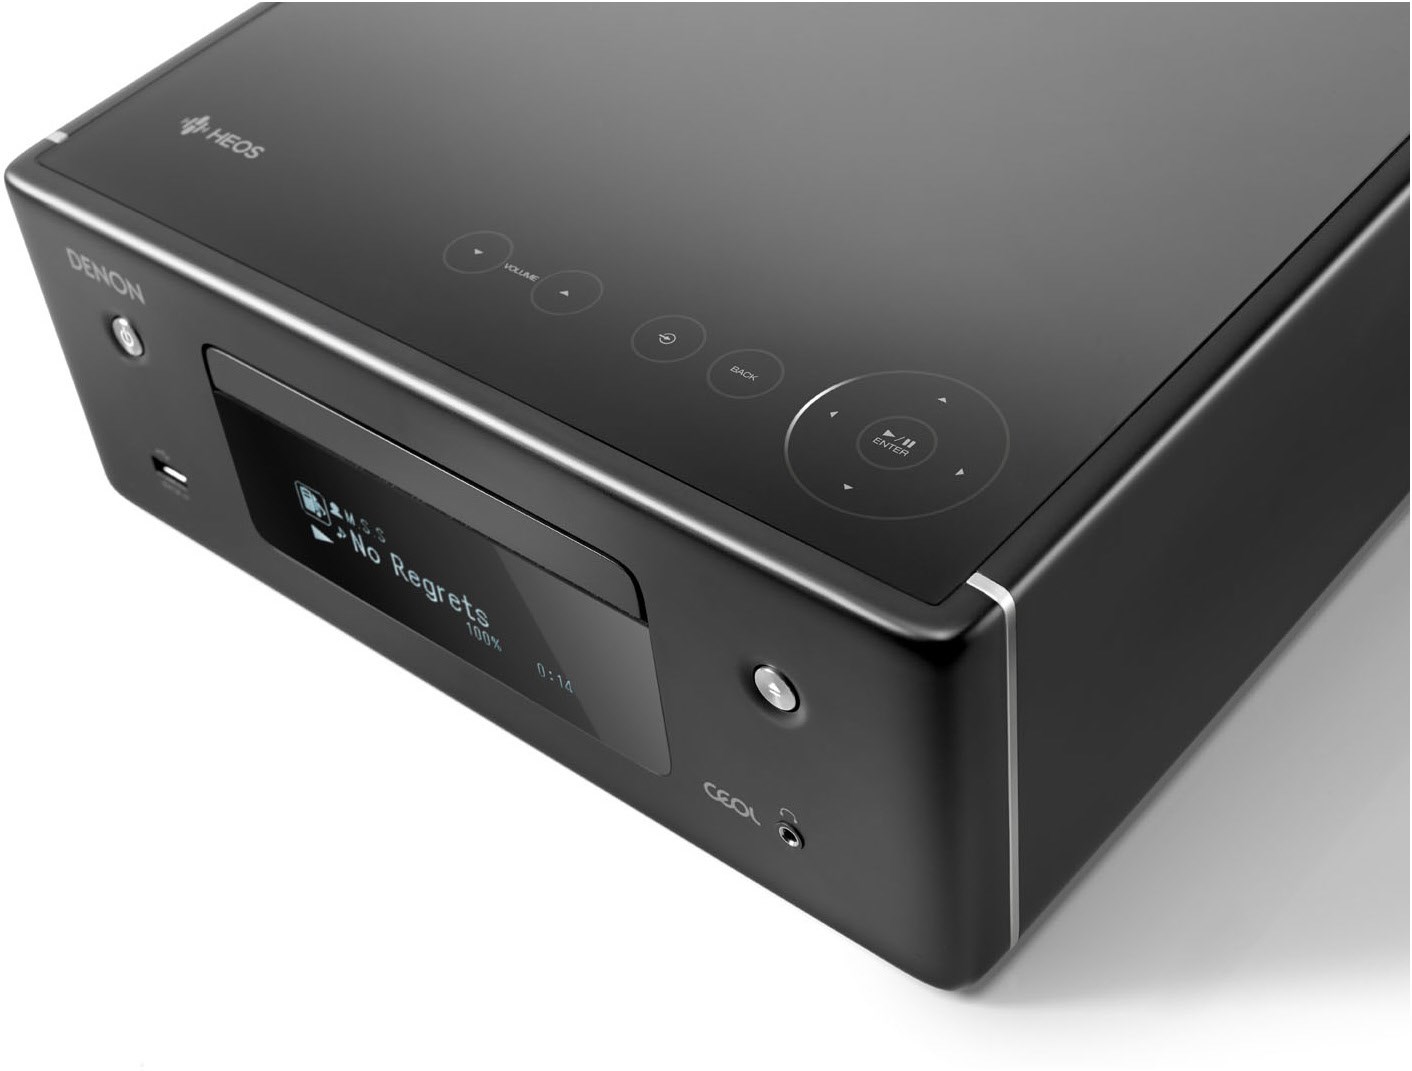 Denon CEOL N 10 Kompakt-Anlage mit Lautsprechern schwarz